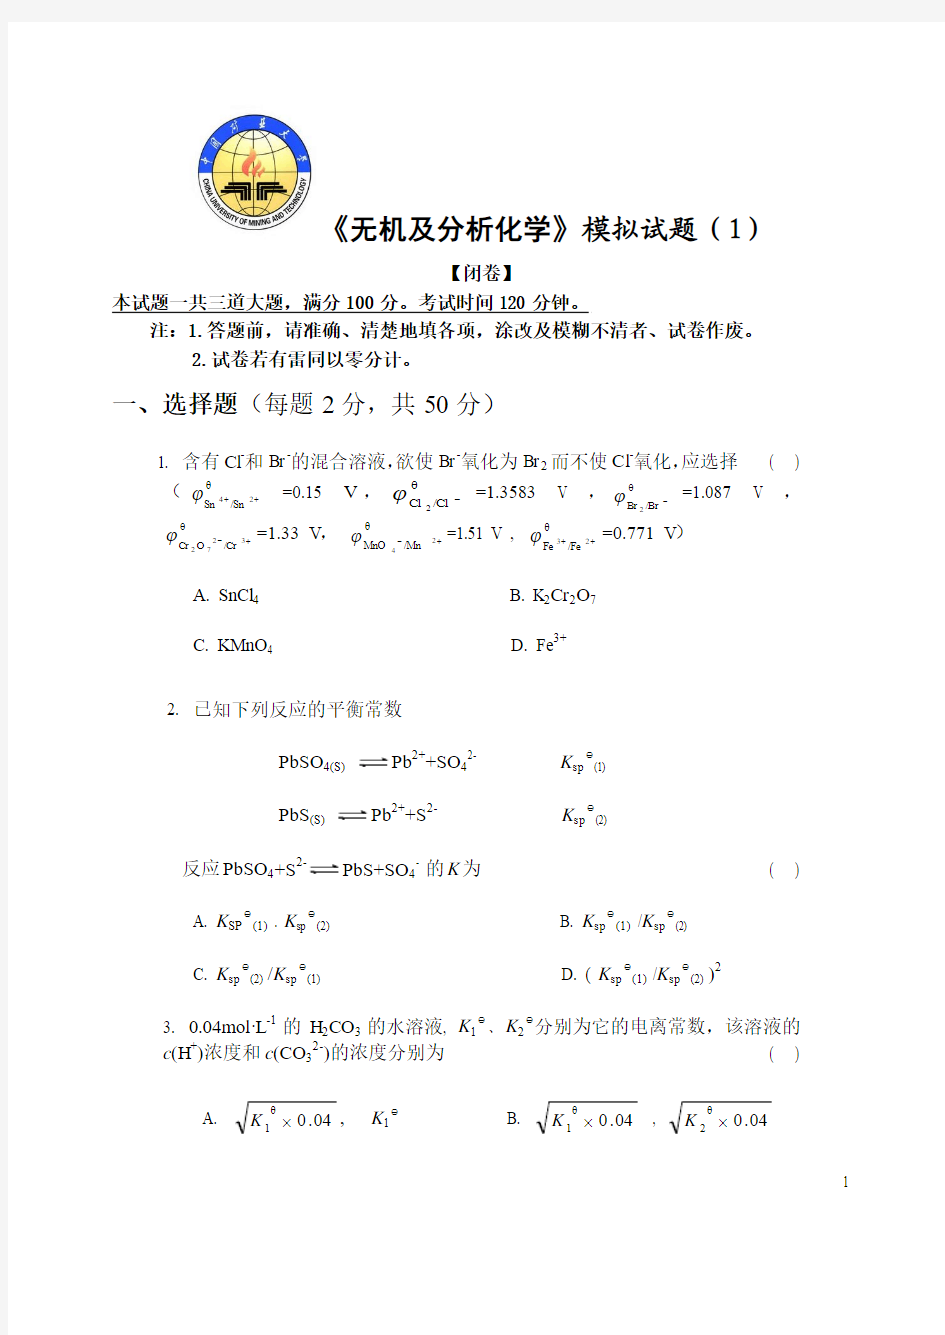 中国矿业大学《无机及分析化学》模拟试题(1)